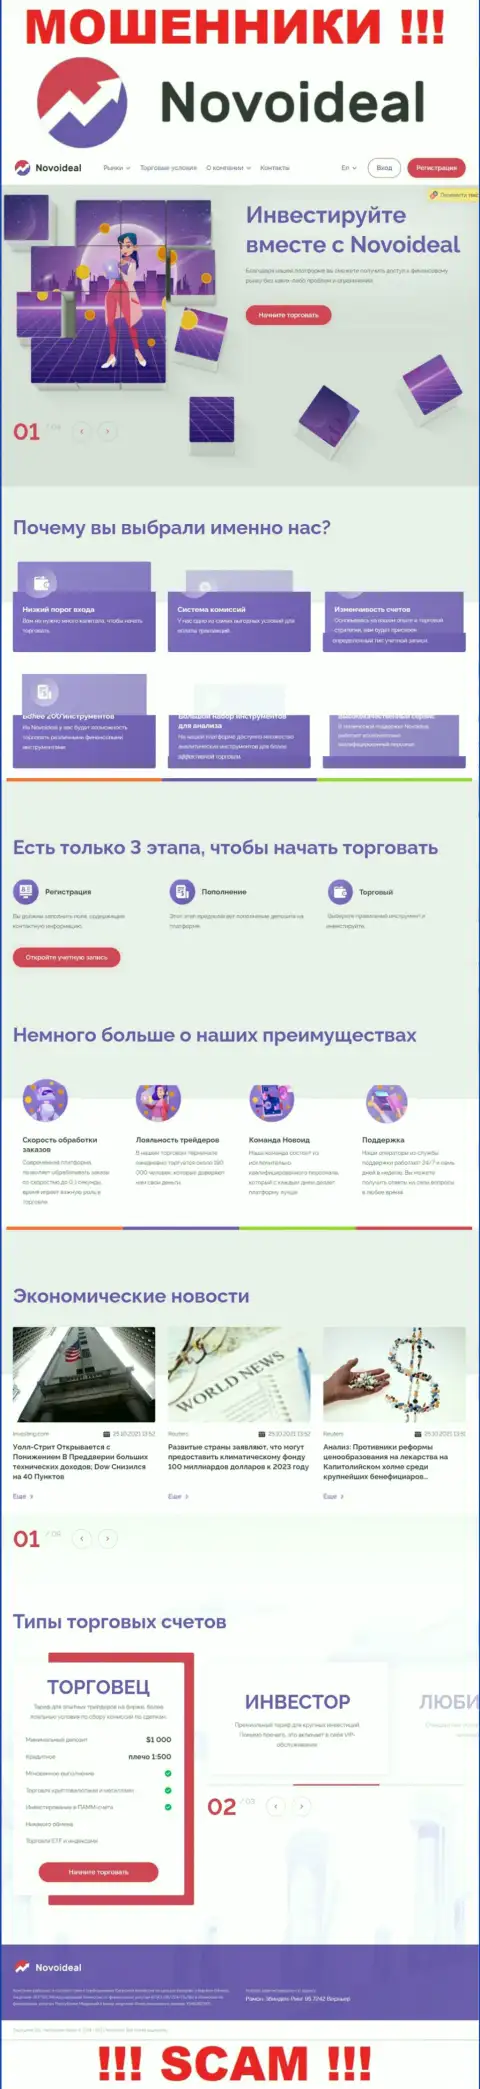 Официальный интернет-портал НовоИдеал Ком - красивая страничка для привлечения лохов